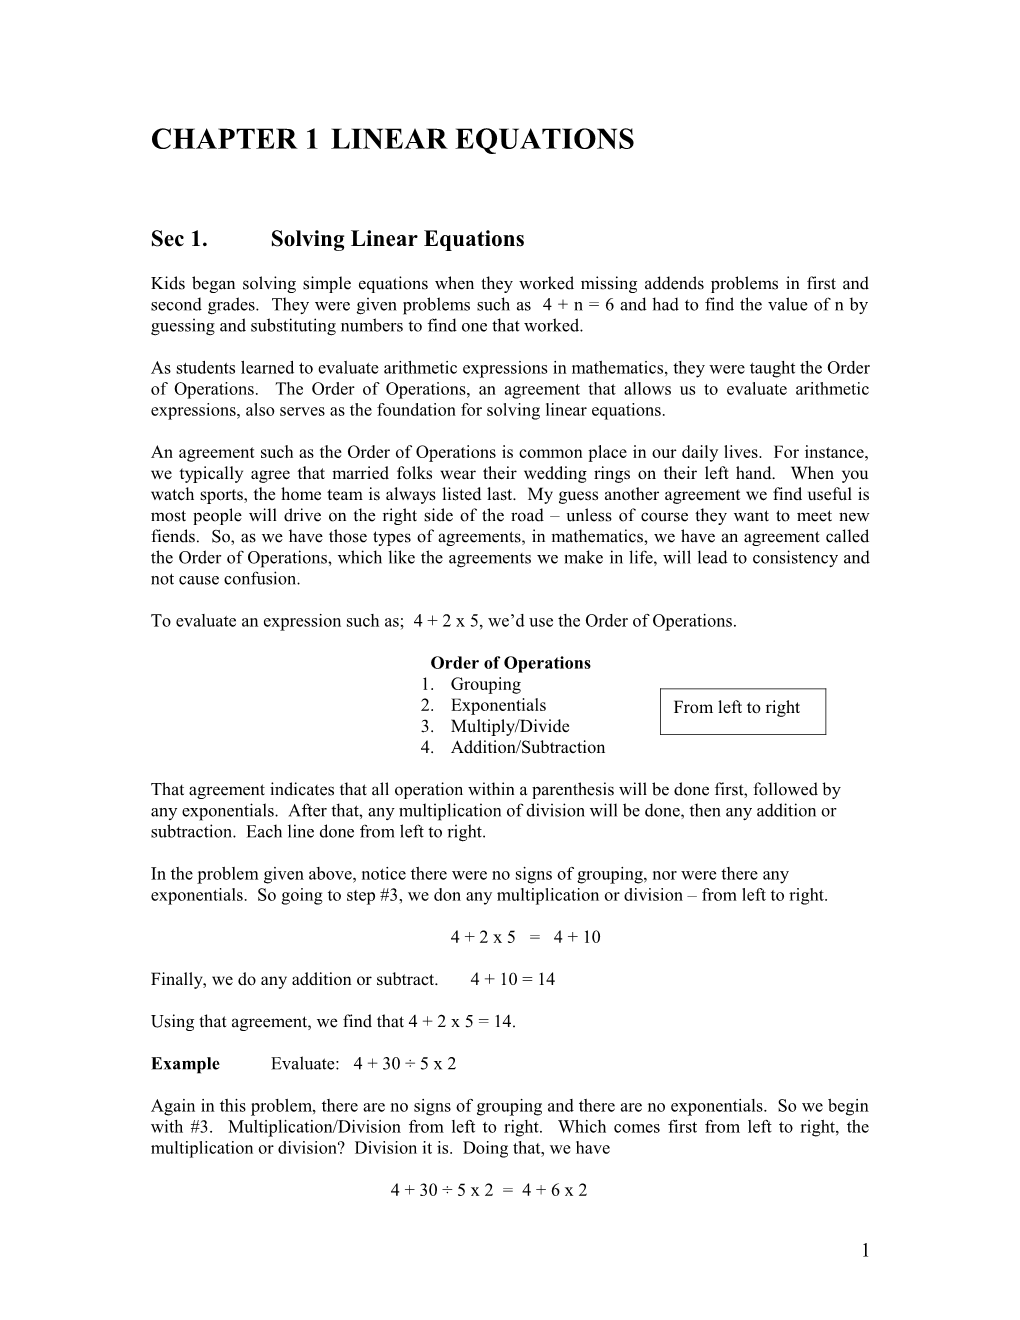 Sec 1.Solving Linear Equations